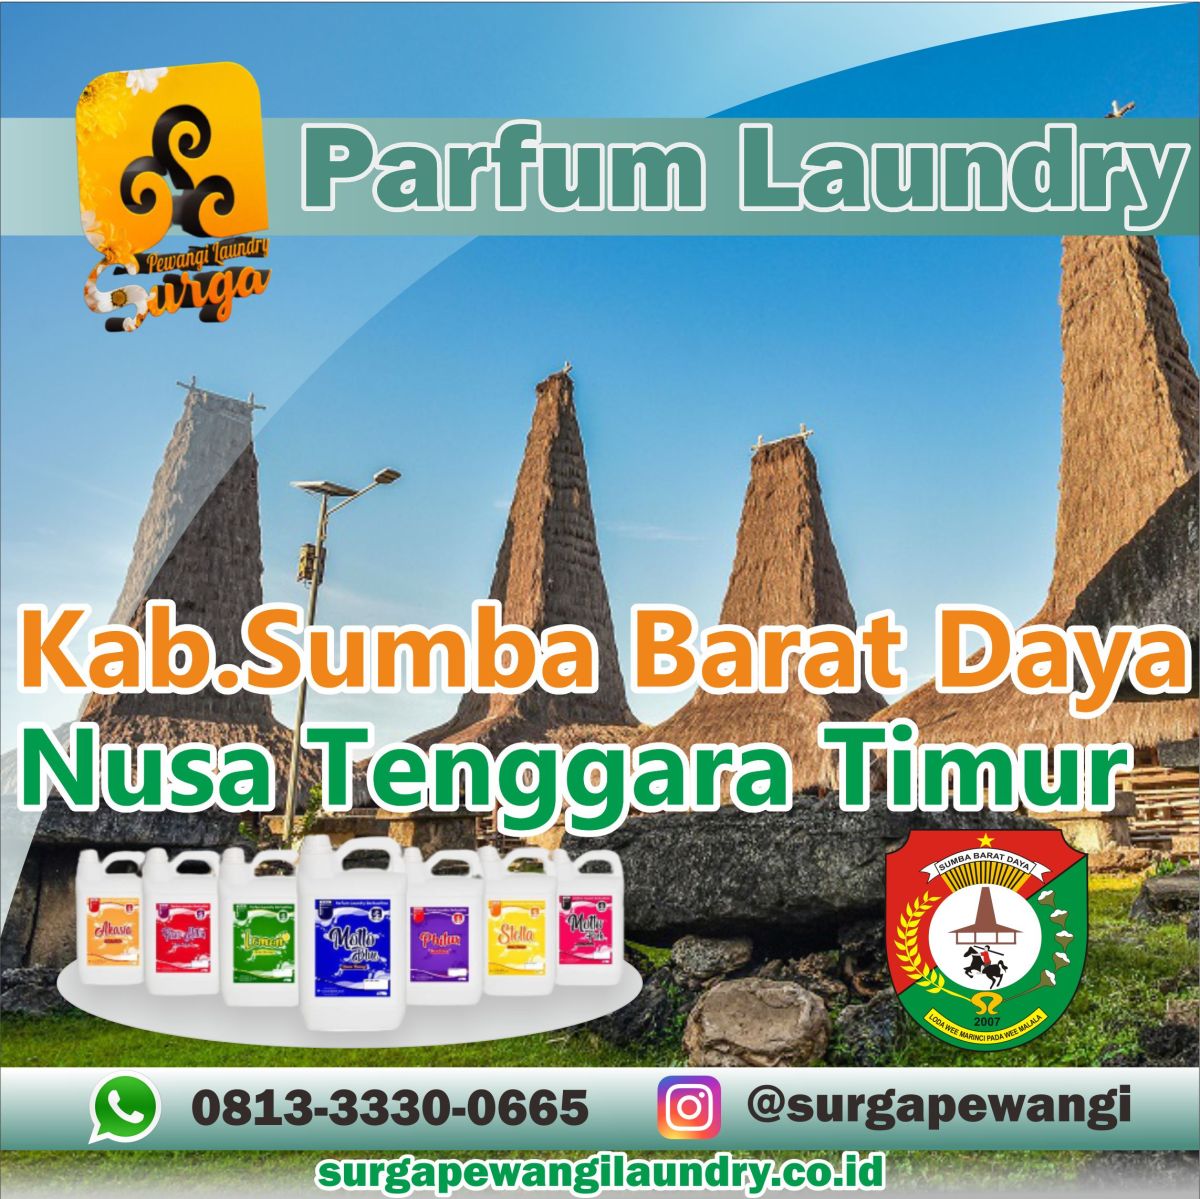 Parfum Laundry Kabupaten Sumba Barat Daya, Nusa Tenggara